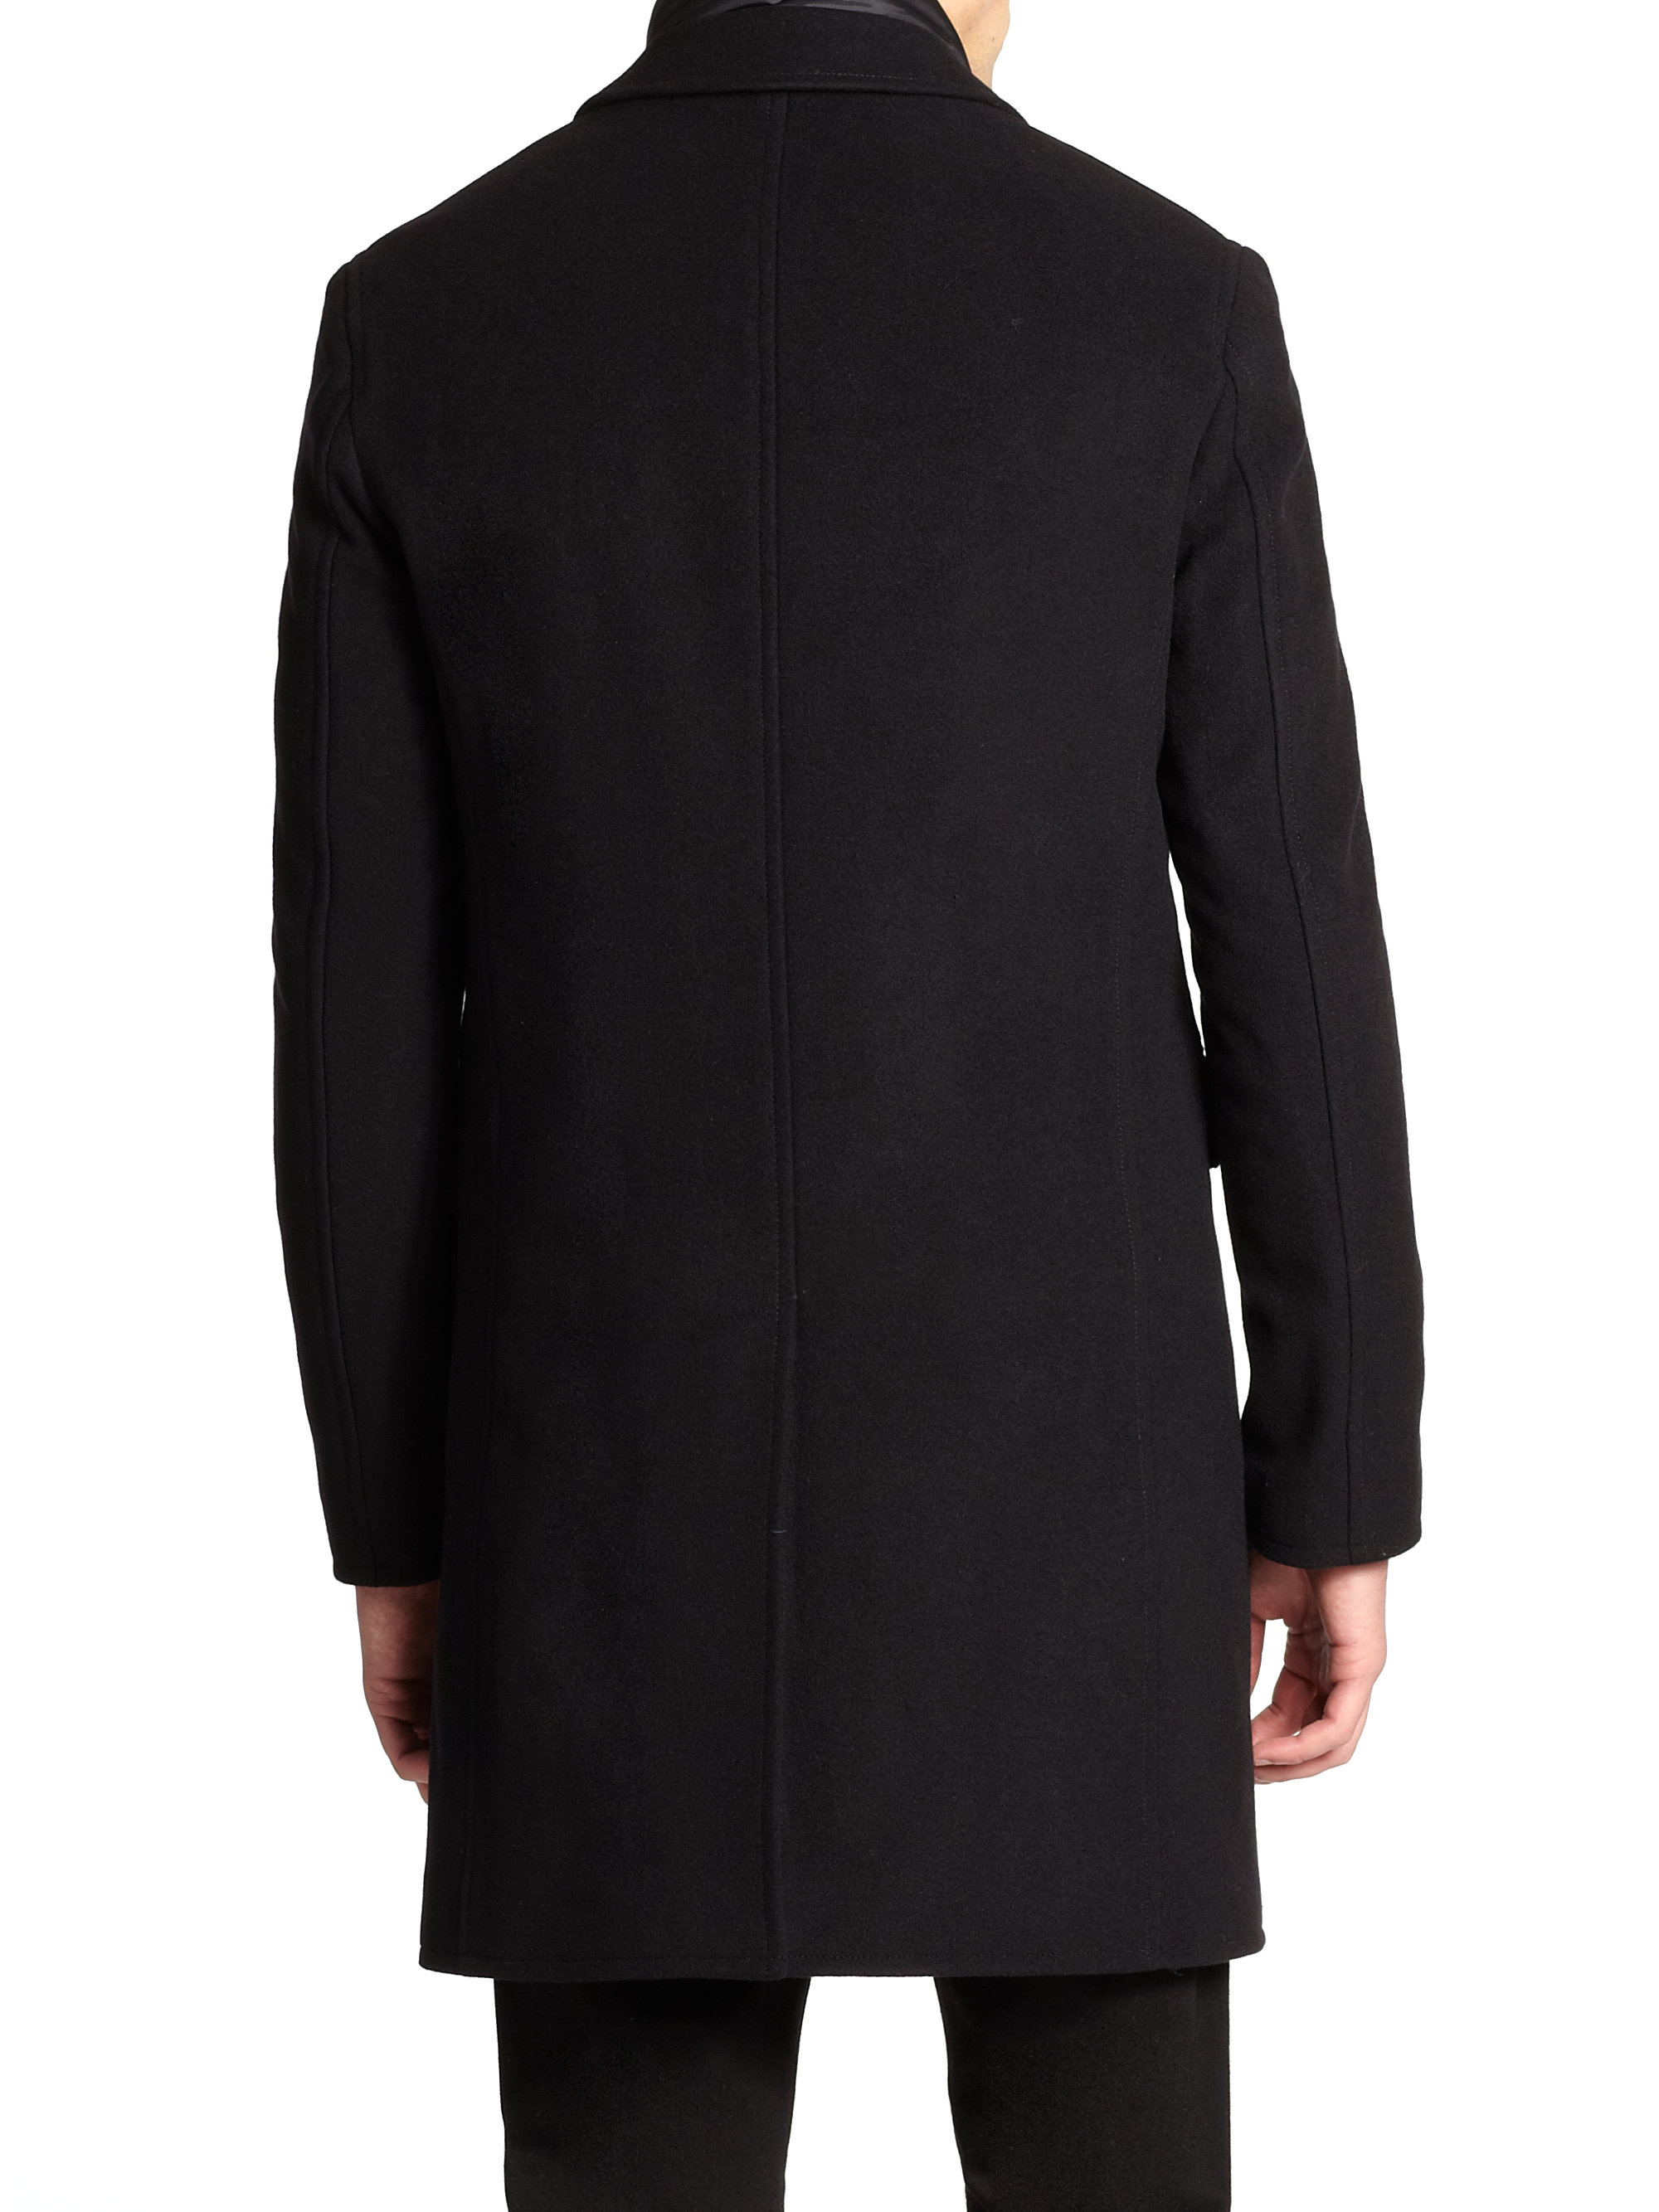 Lyst - Burberry brit Lyndson Jacket & Removable Vest in Black for Men